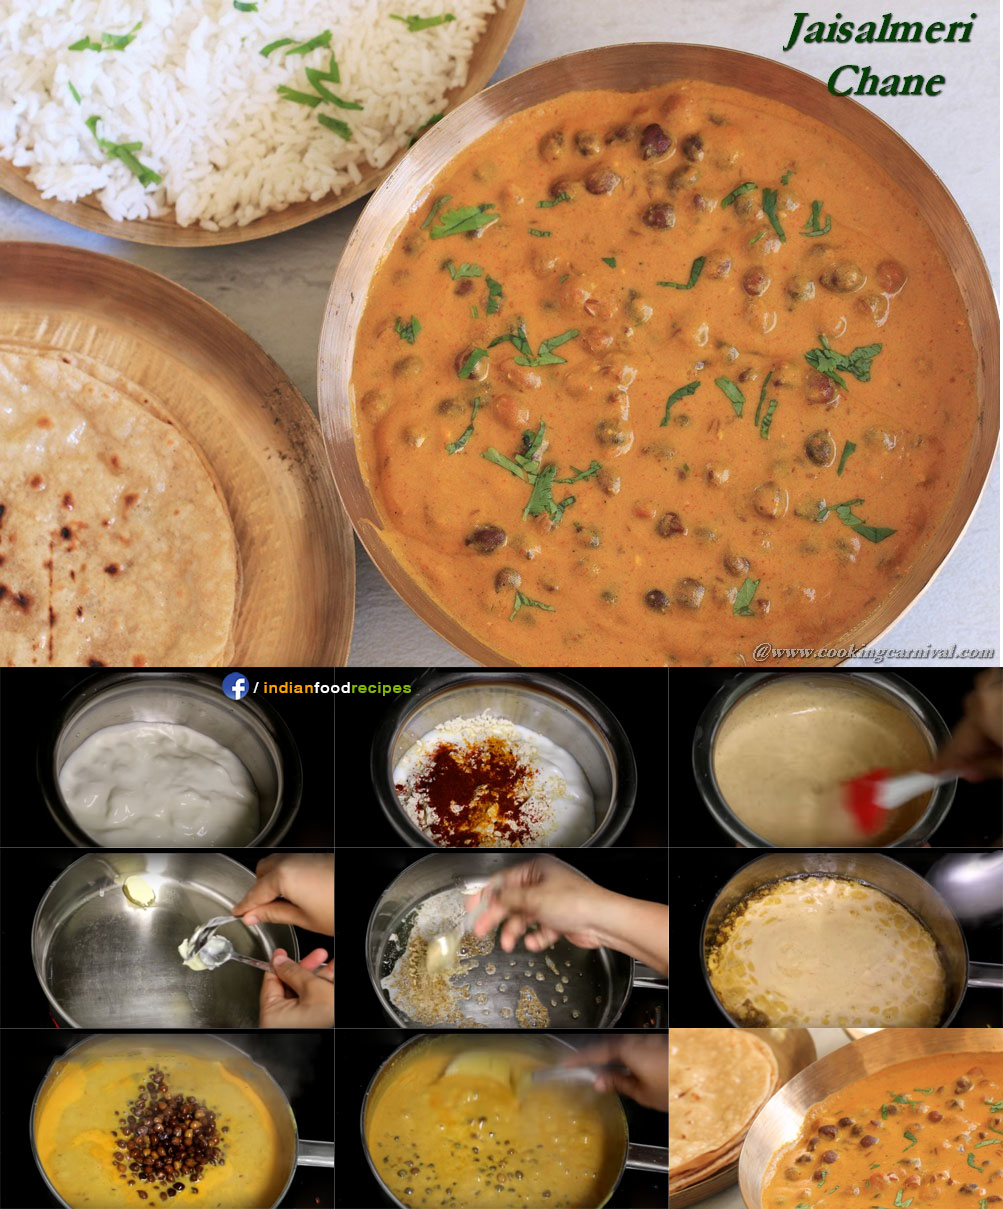 Jaisalmeri Chane recipe step by step